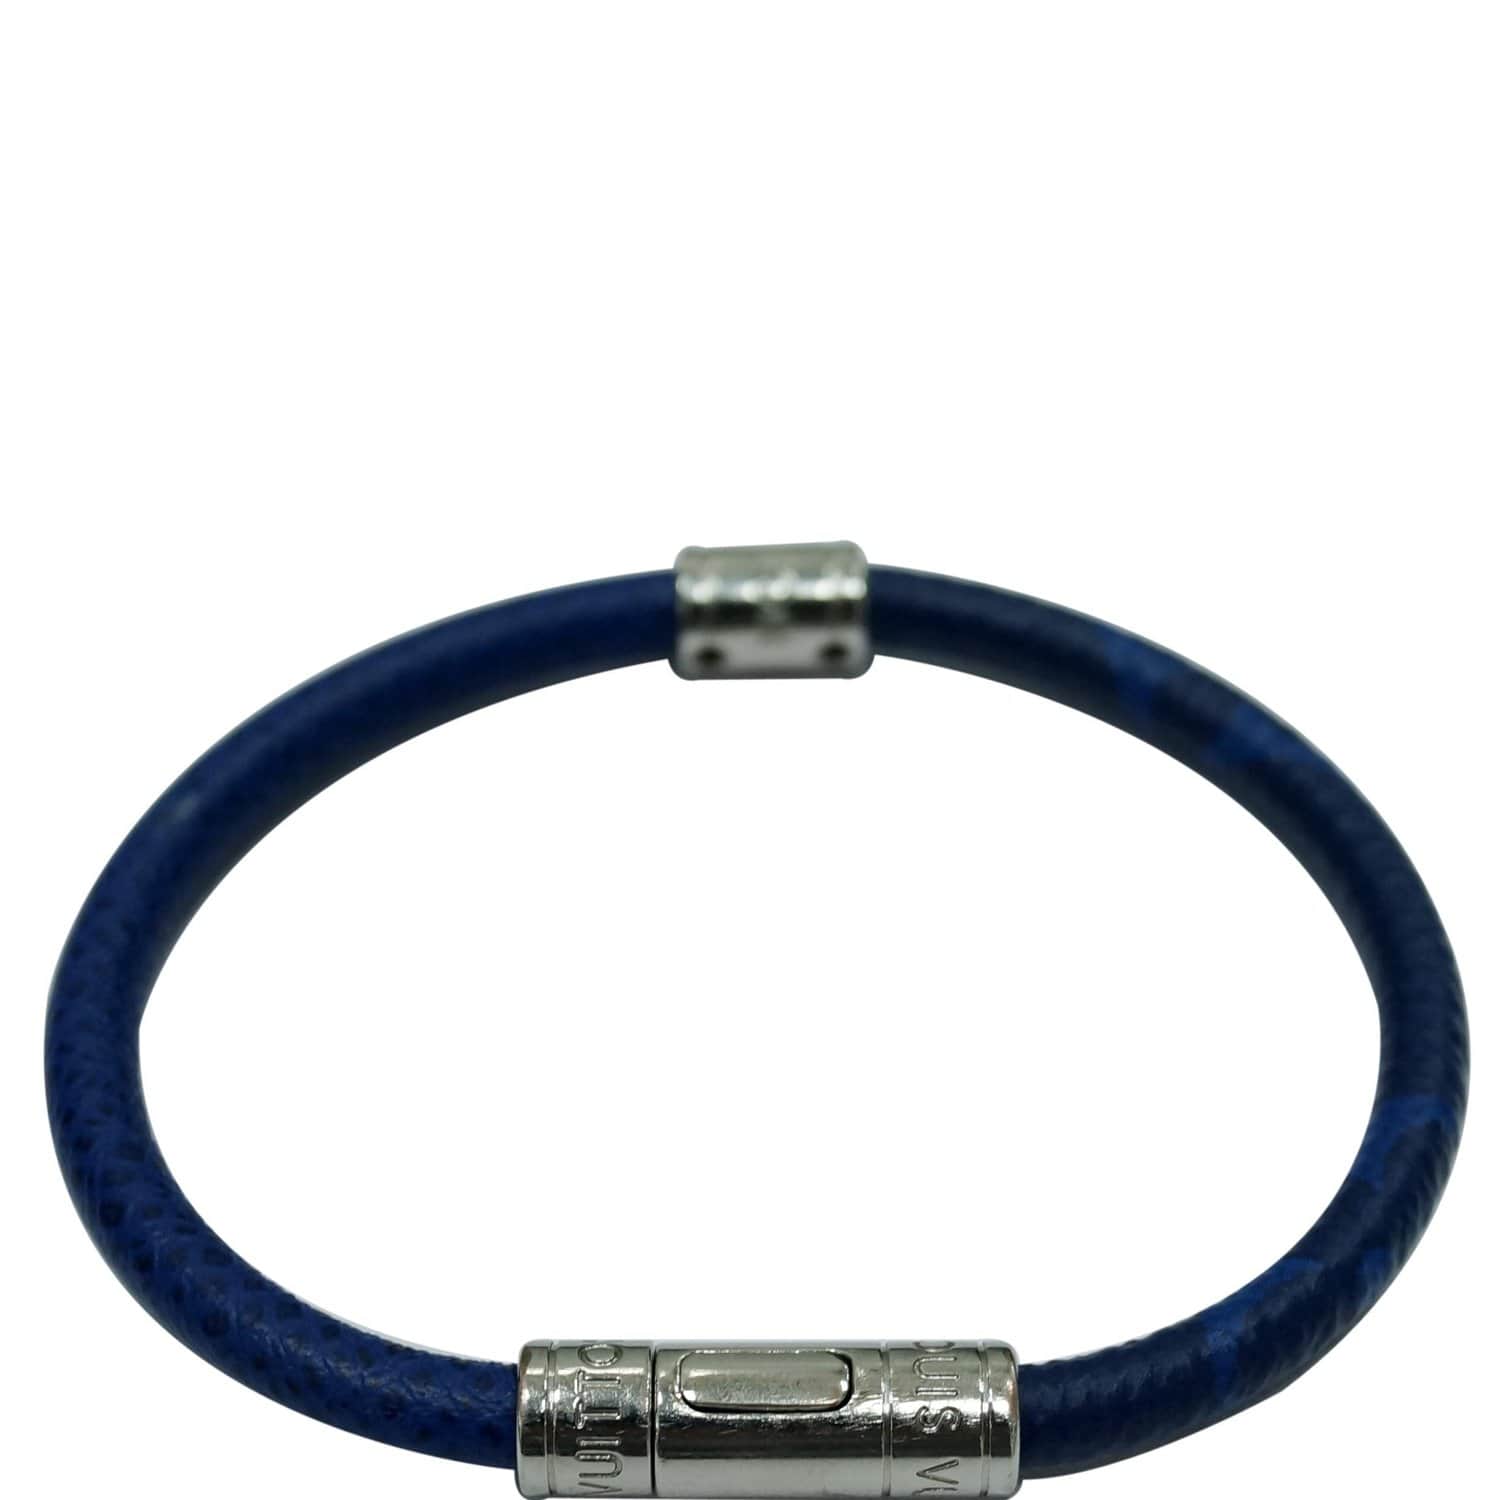 Louis Vuitton Split Leather Bracelet Cobalt/Navy Blue